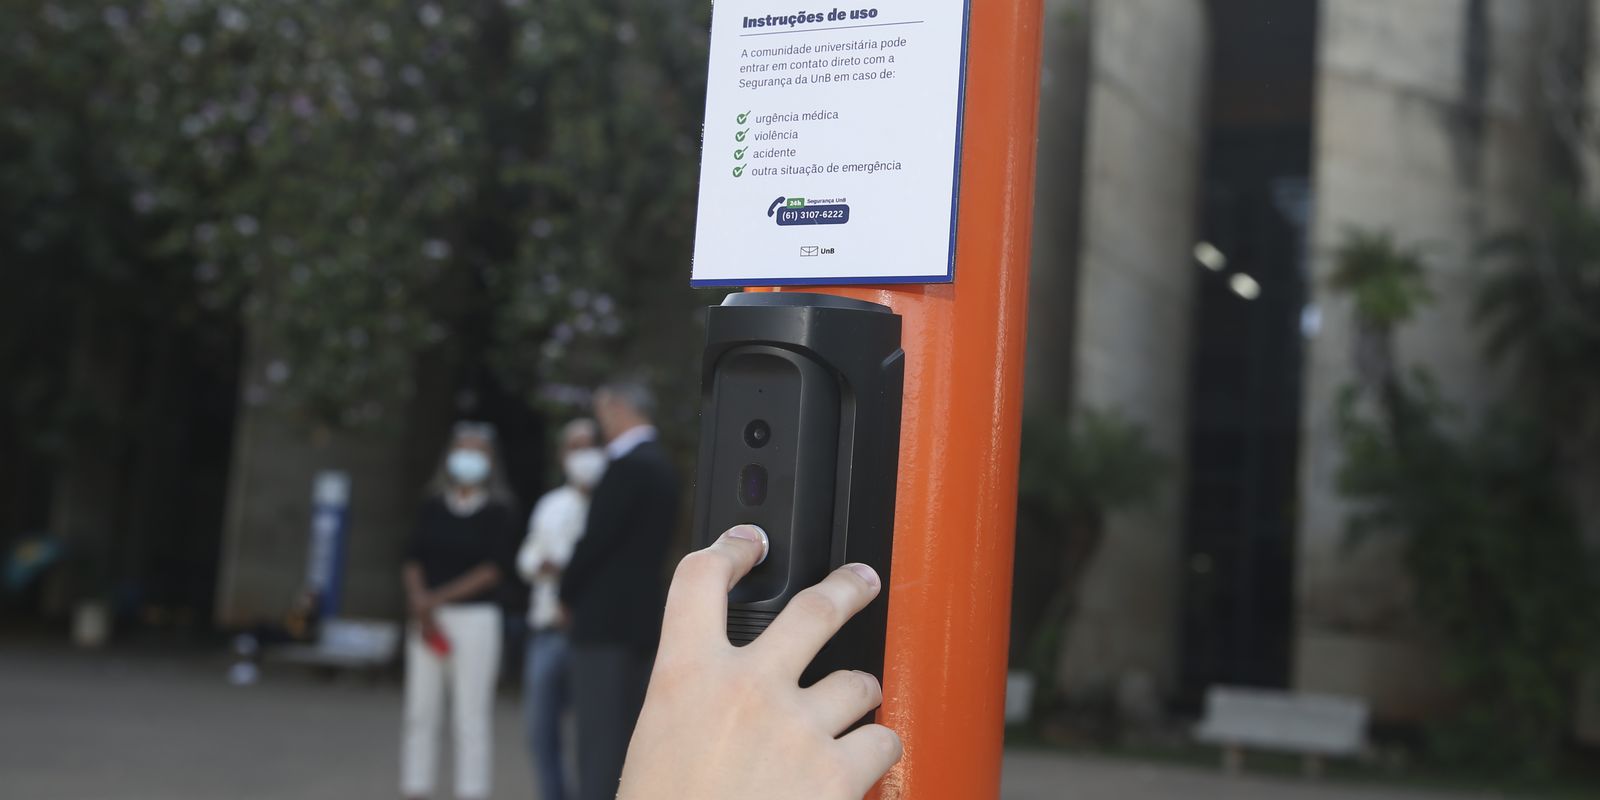 UNB instala postes com botão de emergência no campus